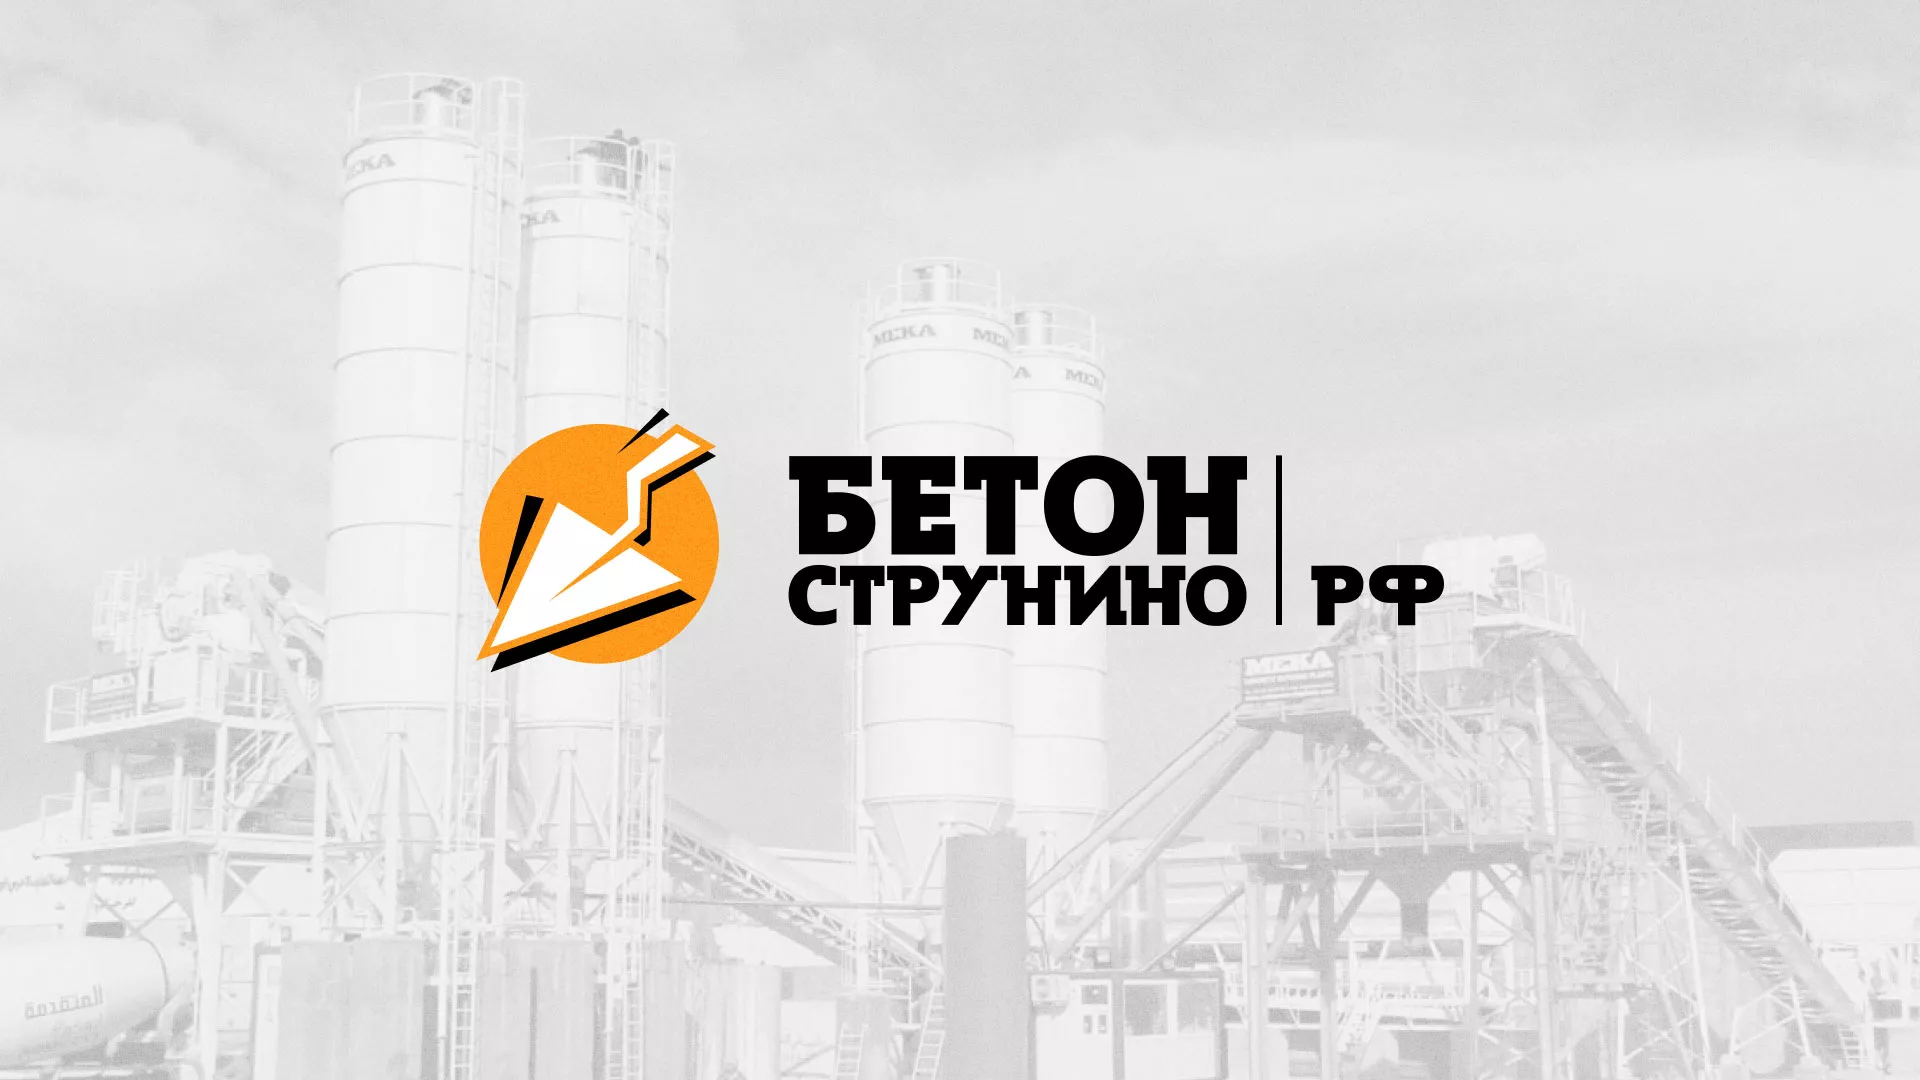 Разработка логотипа для бетонного завода в Петропавловске-Камчатском